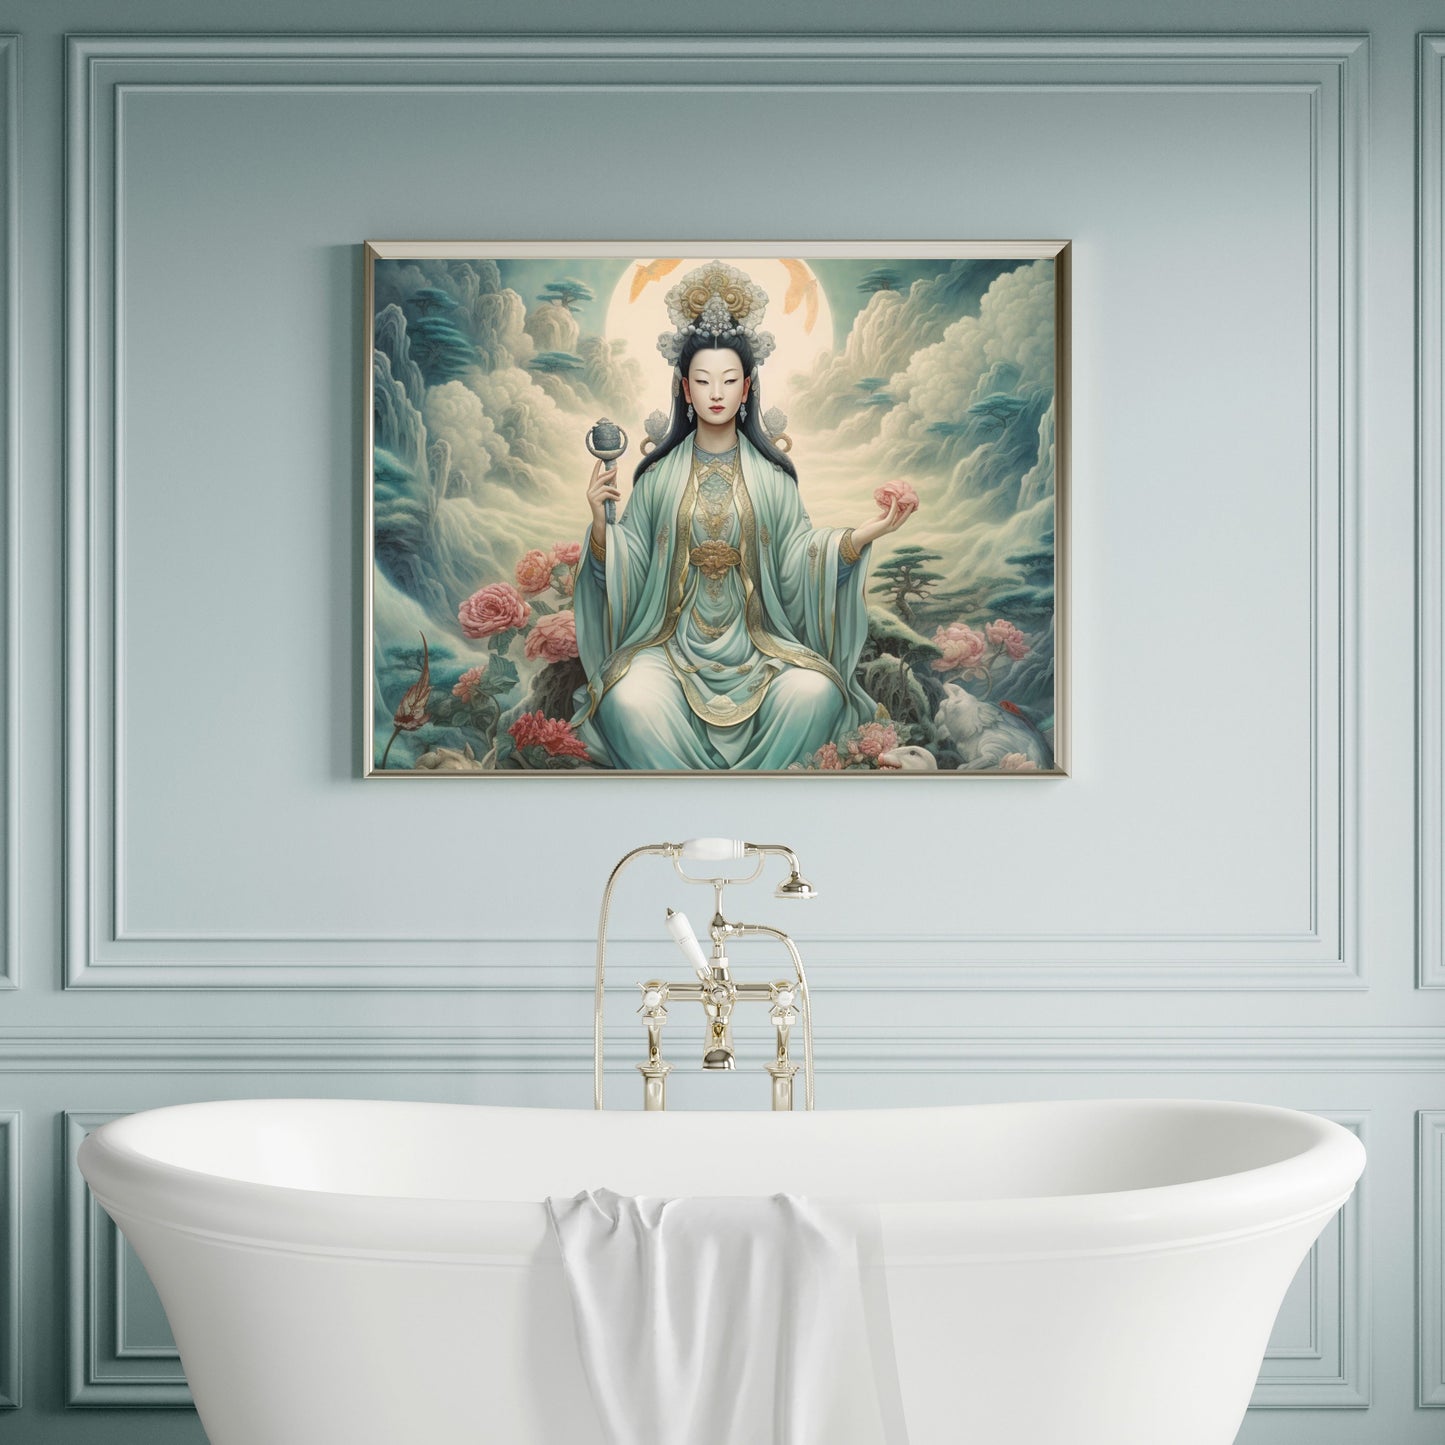 Quan Yin Wall Art - Guan Yin, Kwan Im, Kuan Yin - Goddess of Compassion. Downloadable Wall Art Poster   